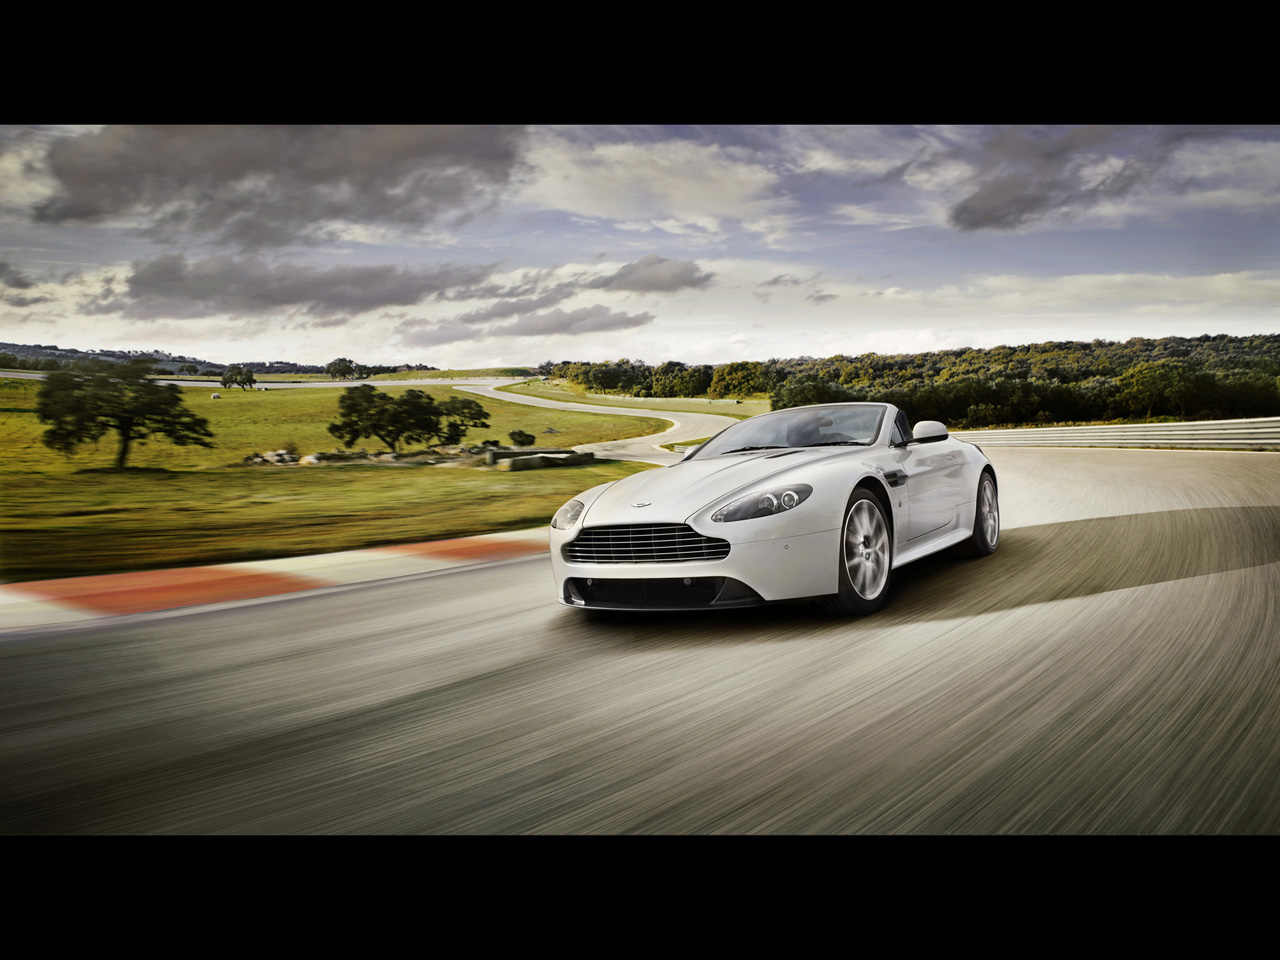 Télécharger des fonds d'écran Aston Martin Vantage HD